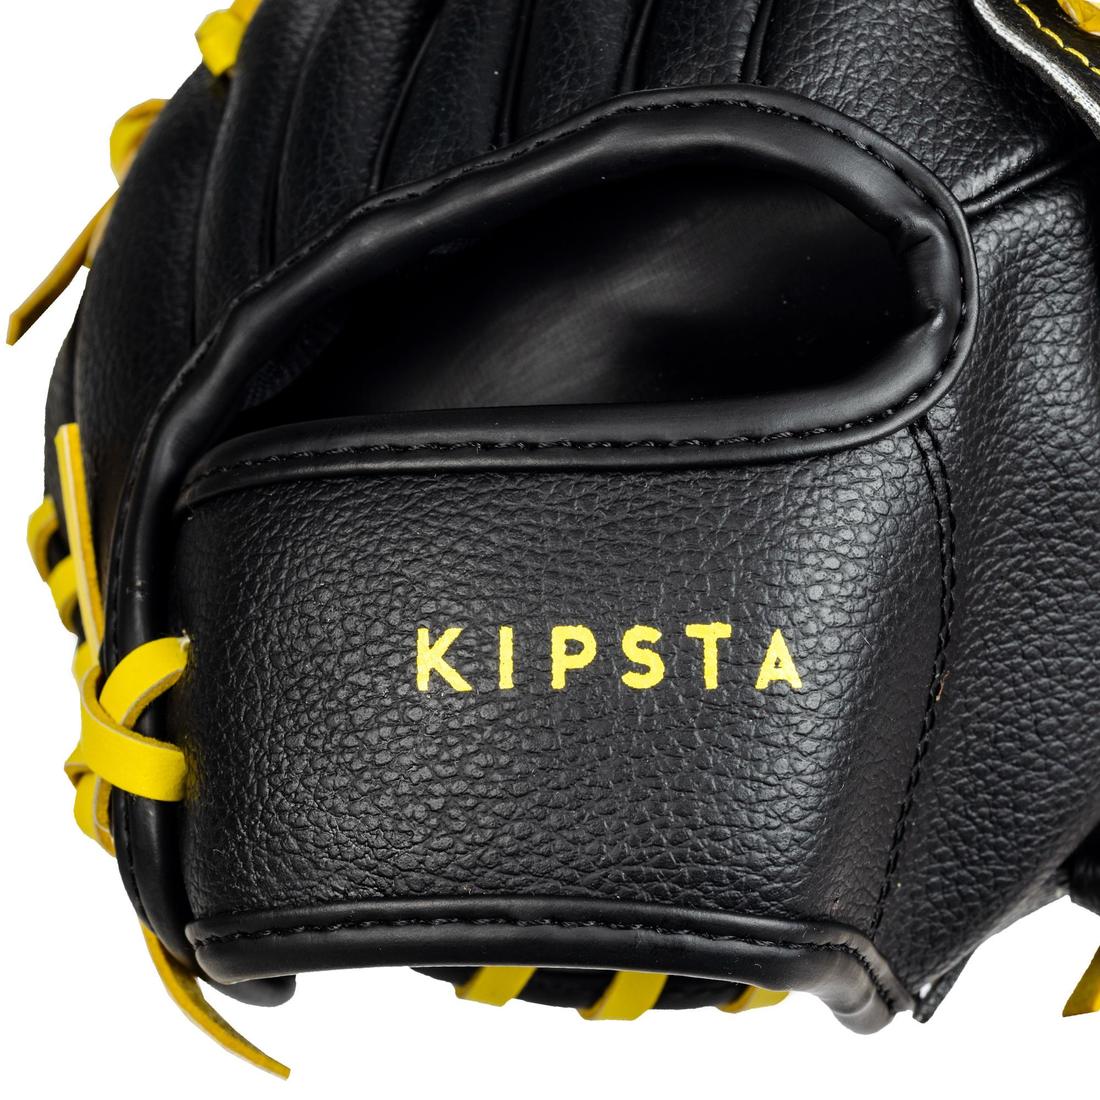 KIPSTA(キプスタ) 野球 グローブ 右投げ用 BA100 キッズ